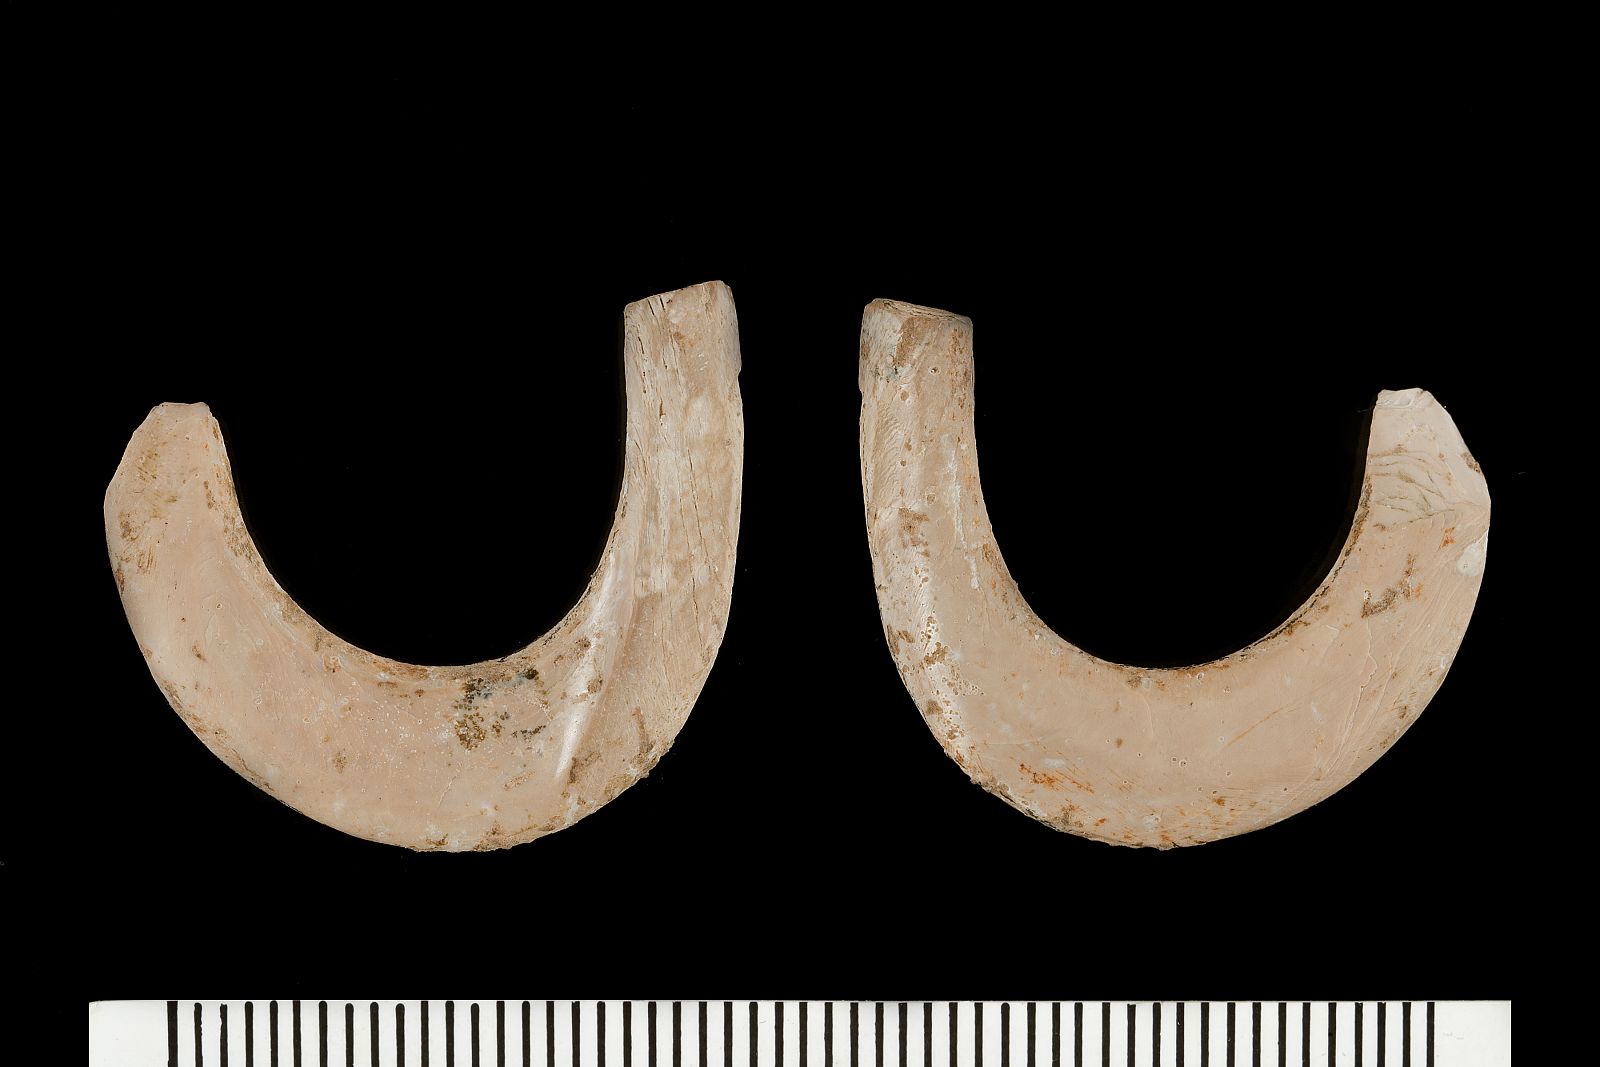 Imagen de anzuelos incompletos datados de hace 11.000 años, aunque en la excavación se han encontrado instrumentos similares con alrededor de 42.000 años